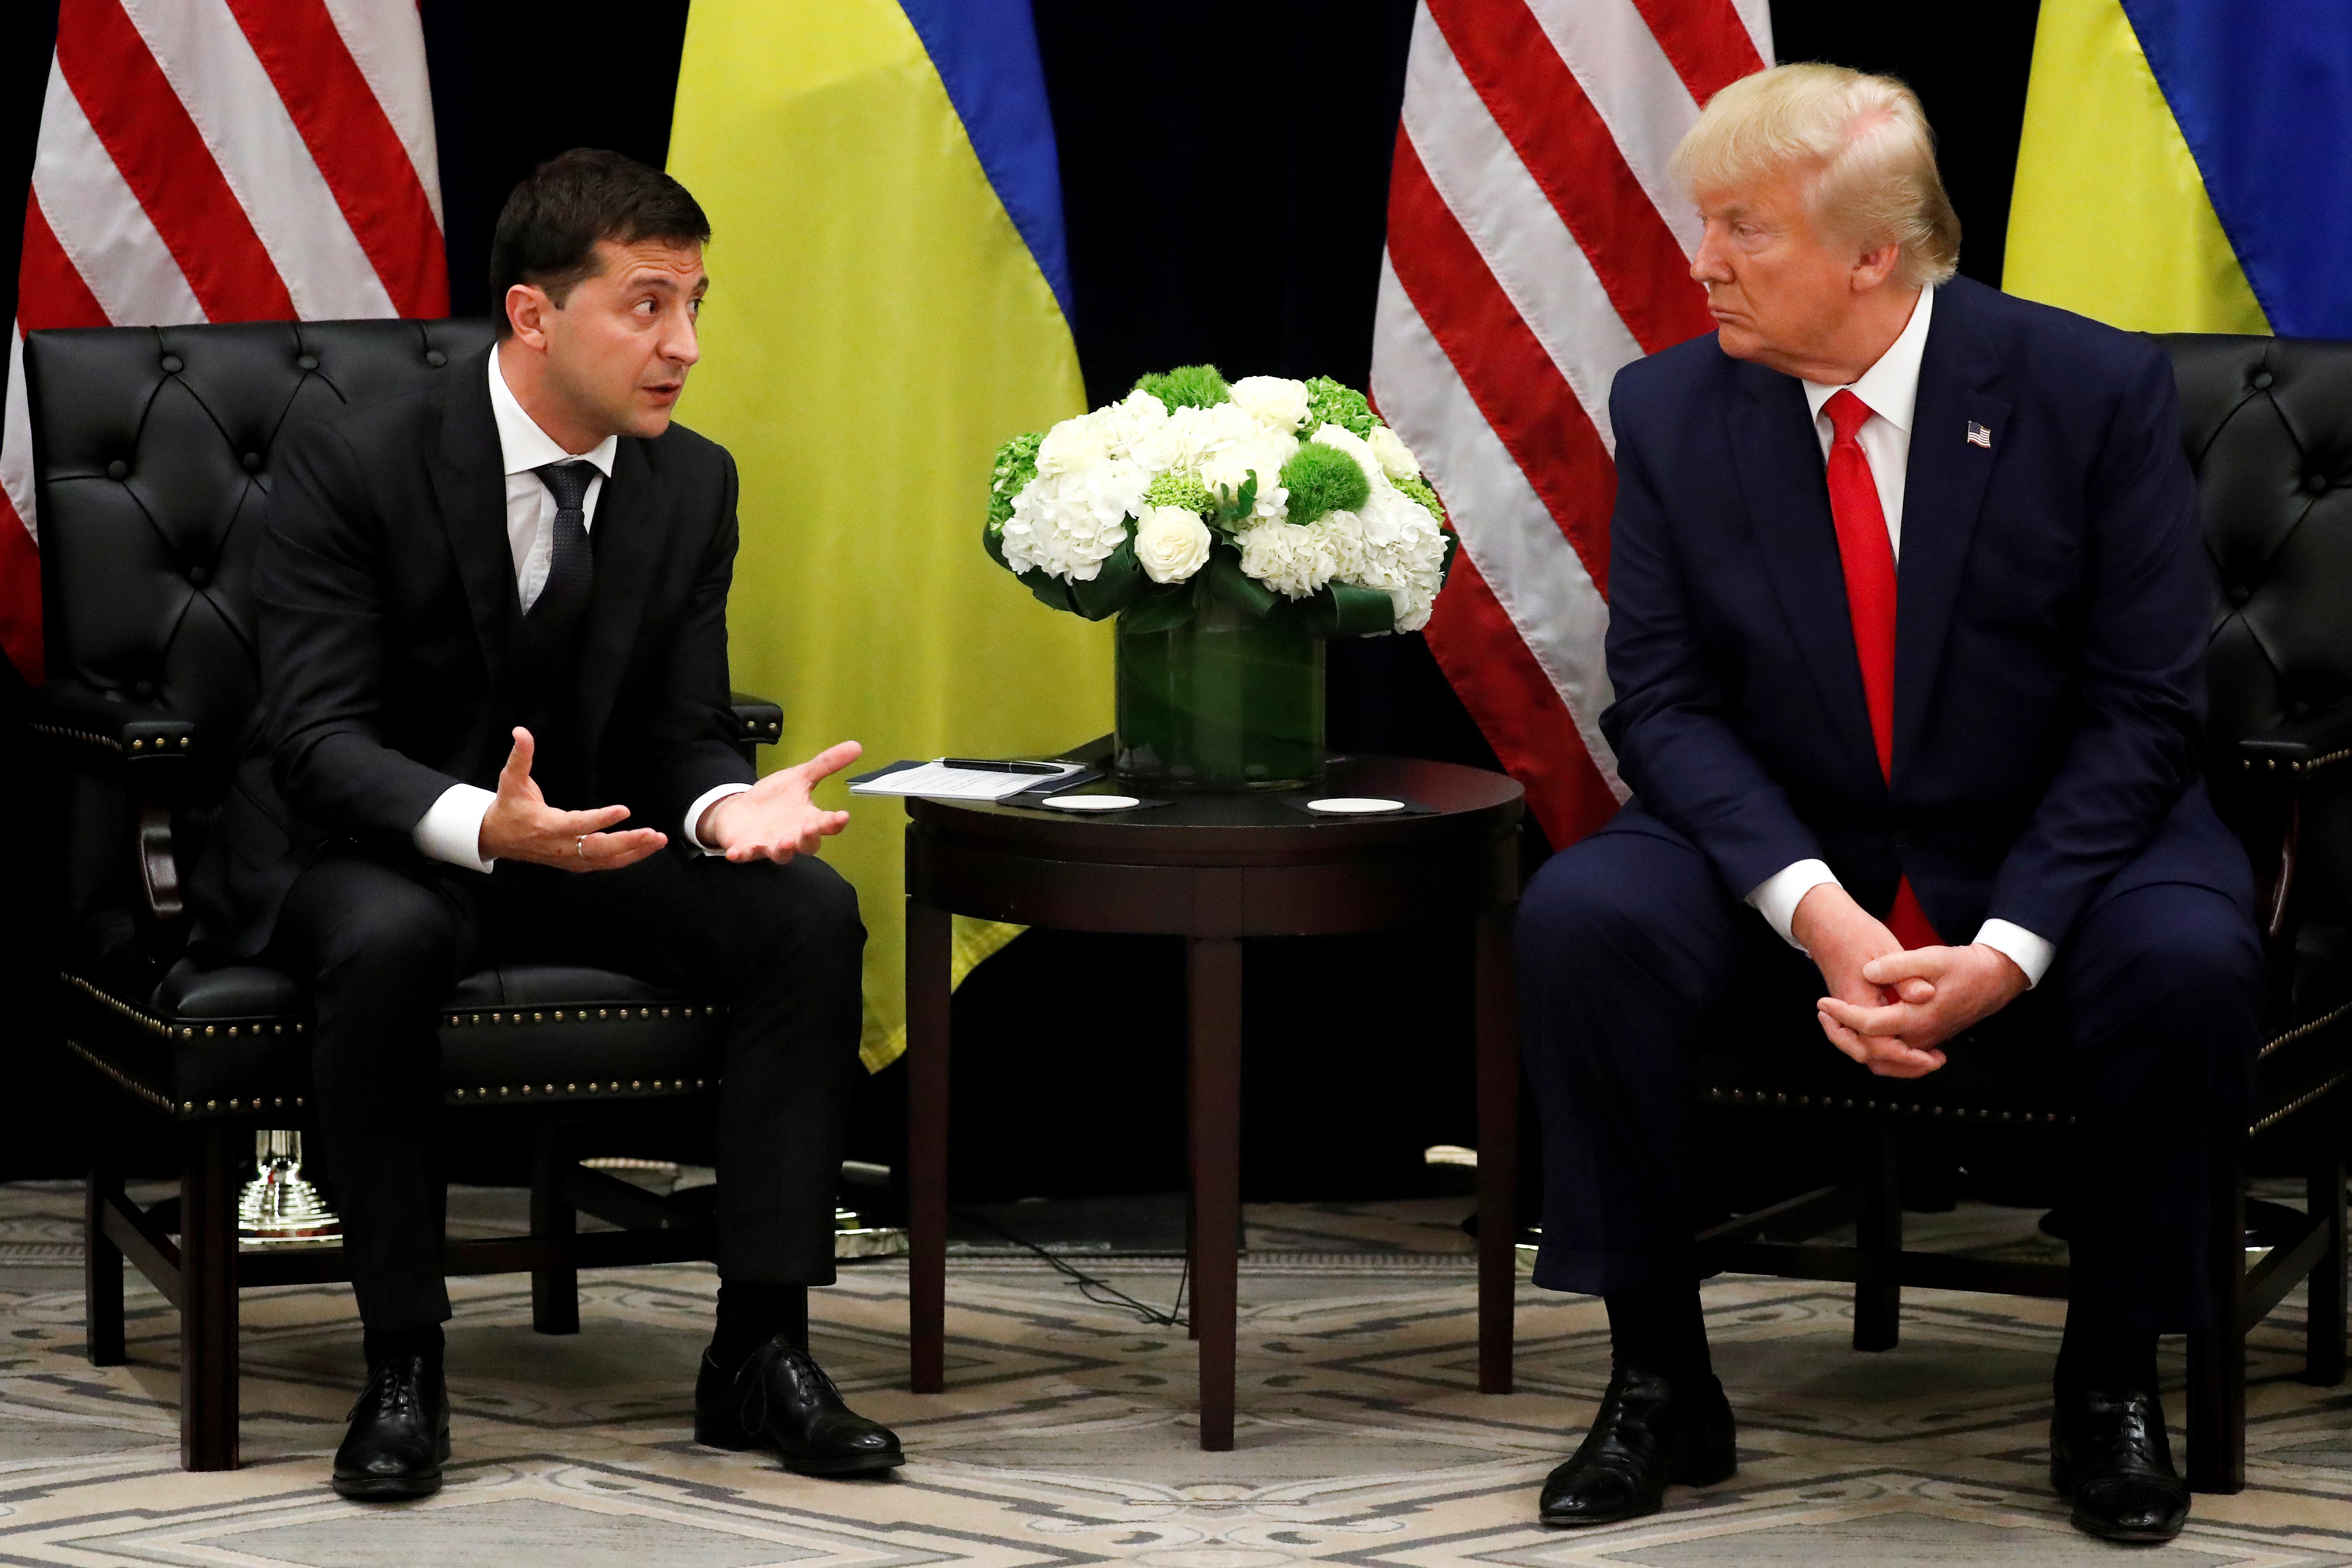 Ο πρόεδρος της Ουκρανίας Βολοντίμιρ Ζελένσκι διαψεύδει ότι ο Τραμπ του άσκησε πιέσεις